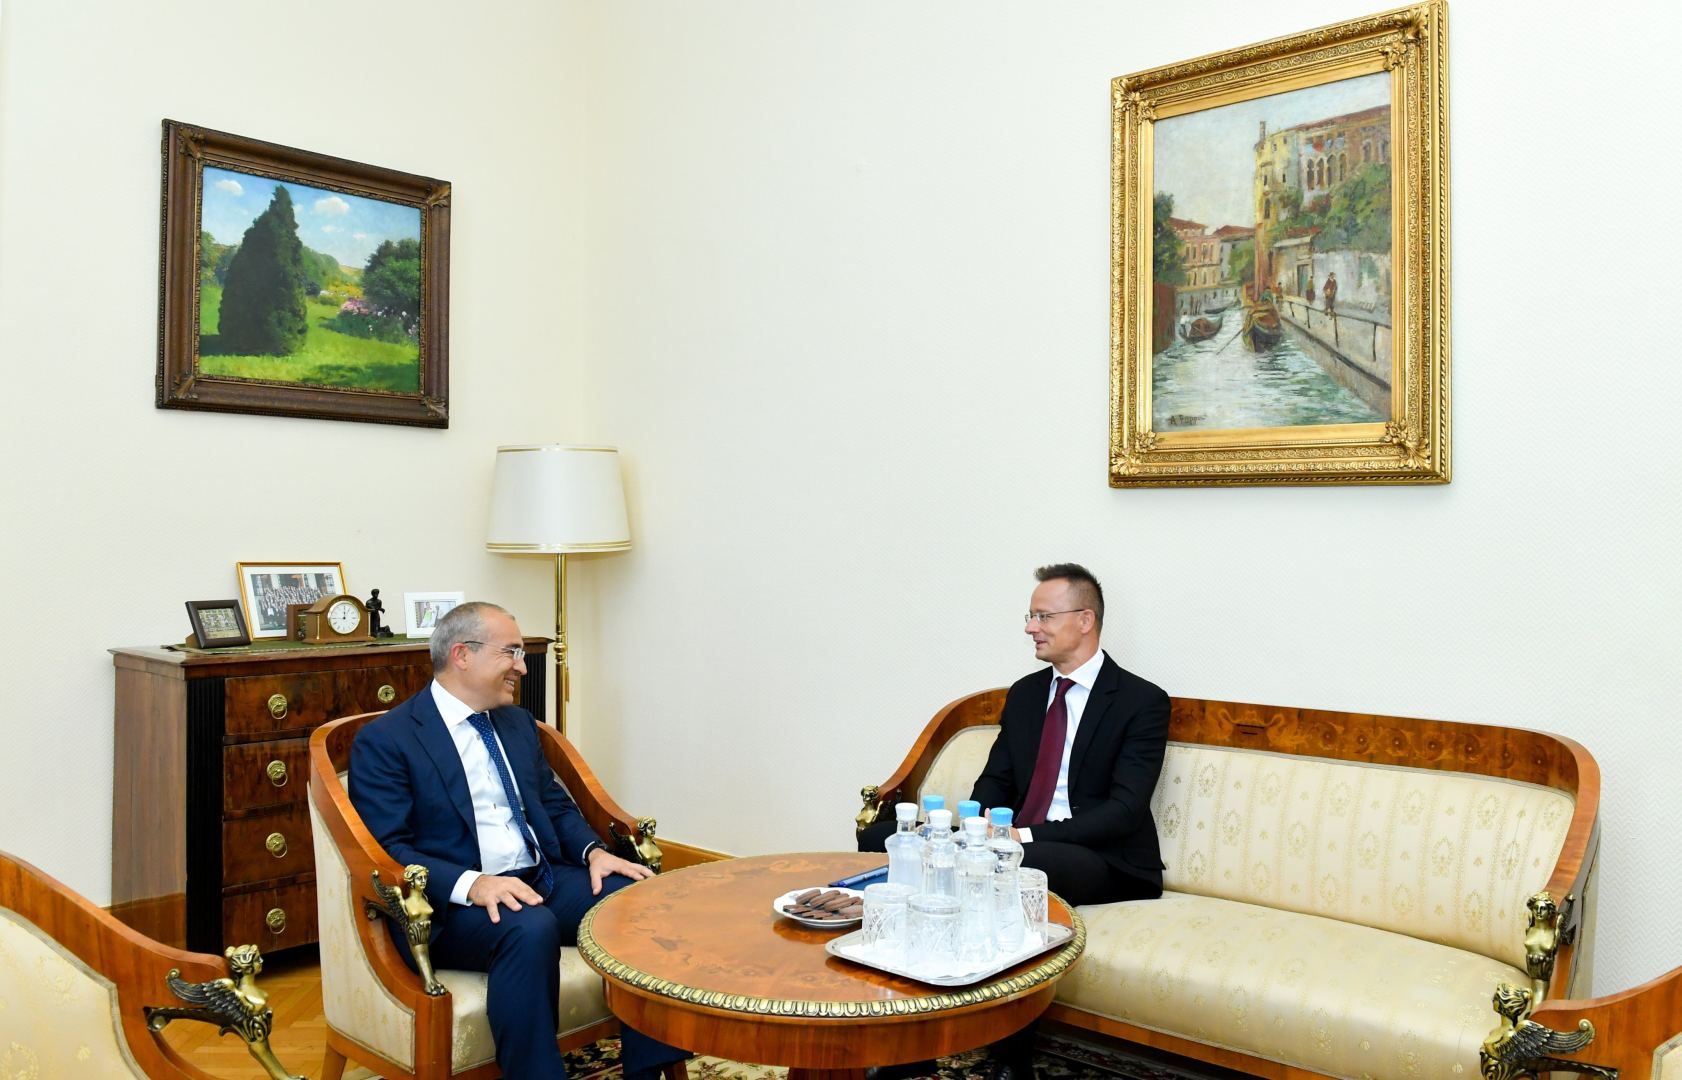 Азербайджан и Венгрия обсудили возможности партнерства по проектам "зеленой" энергетики (ФОТО)